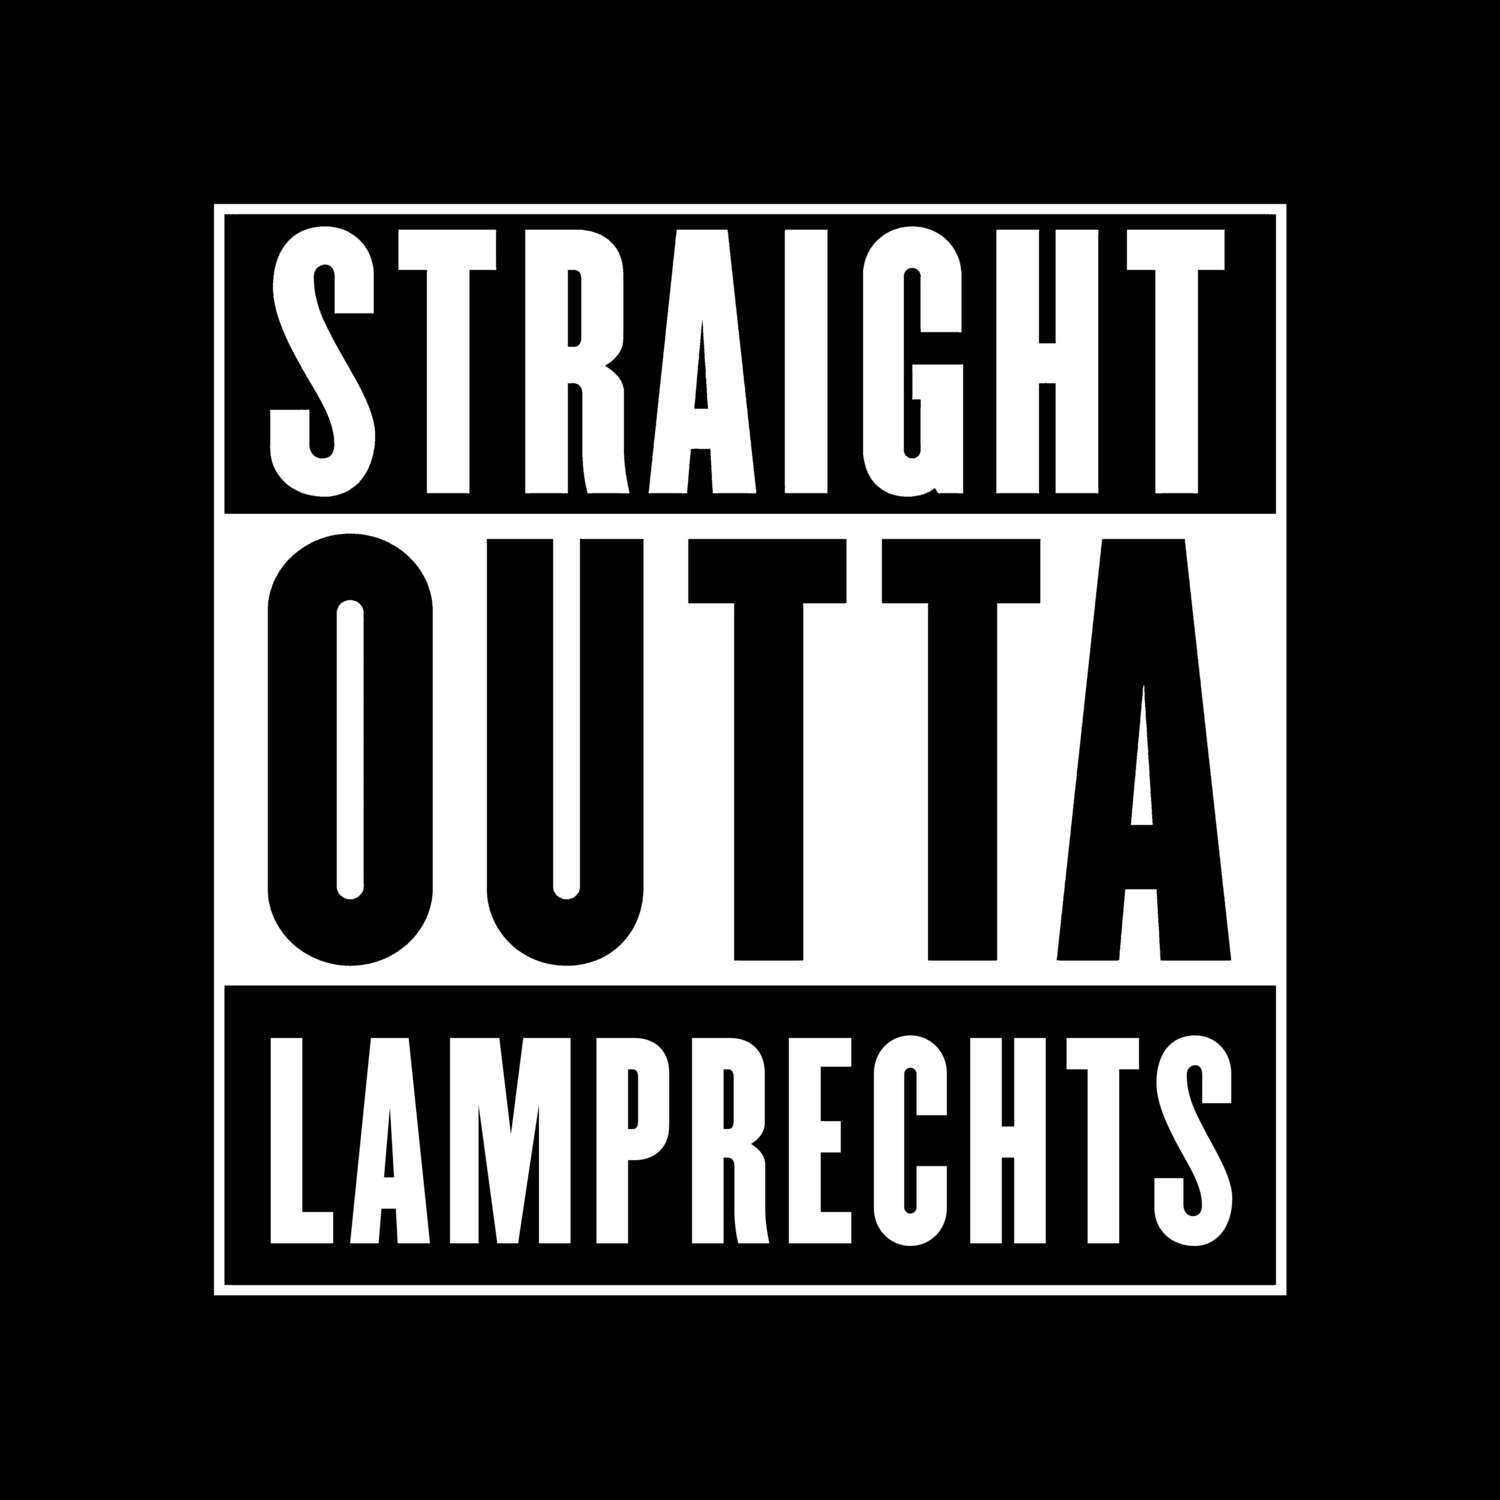 Lamprechts T-Shirt »Straight Outta«